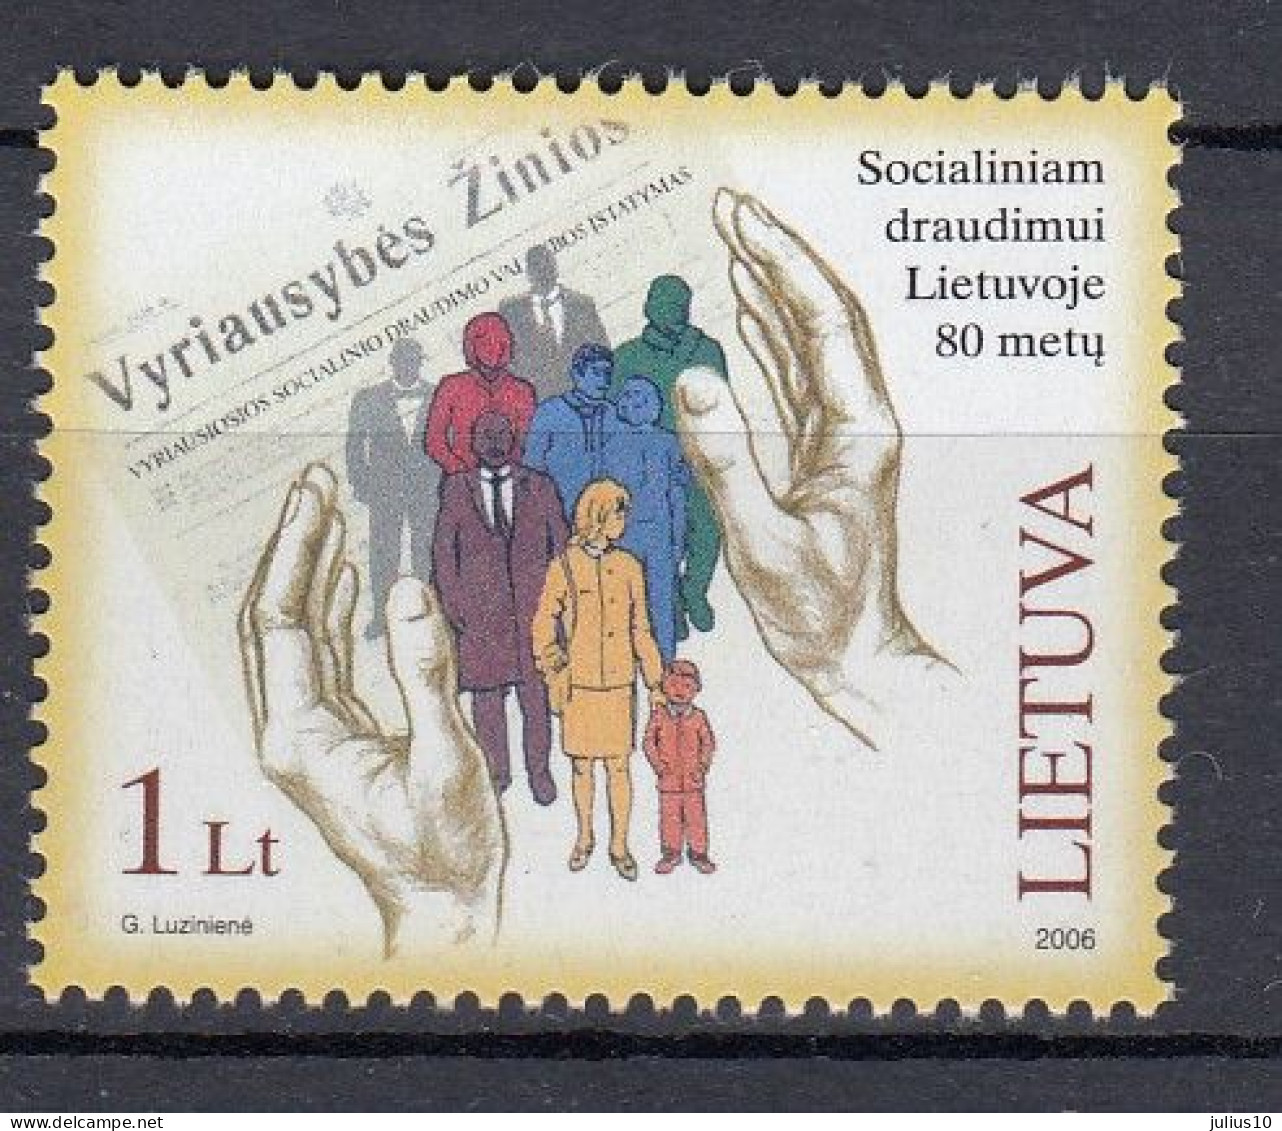 LITHUANIA 2006 Social Insurance System MNH(**) 899 #Lt966 - Litauen